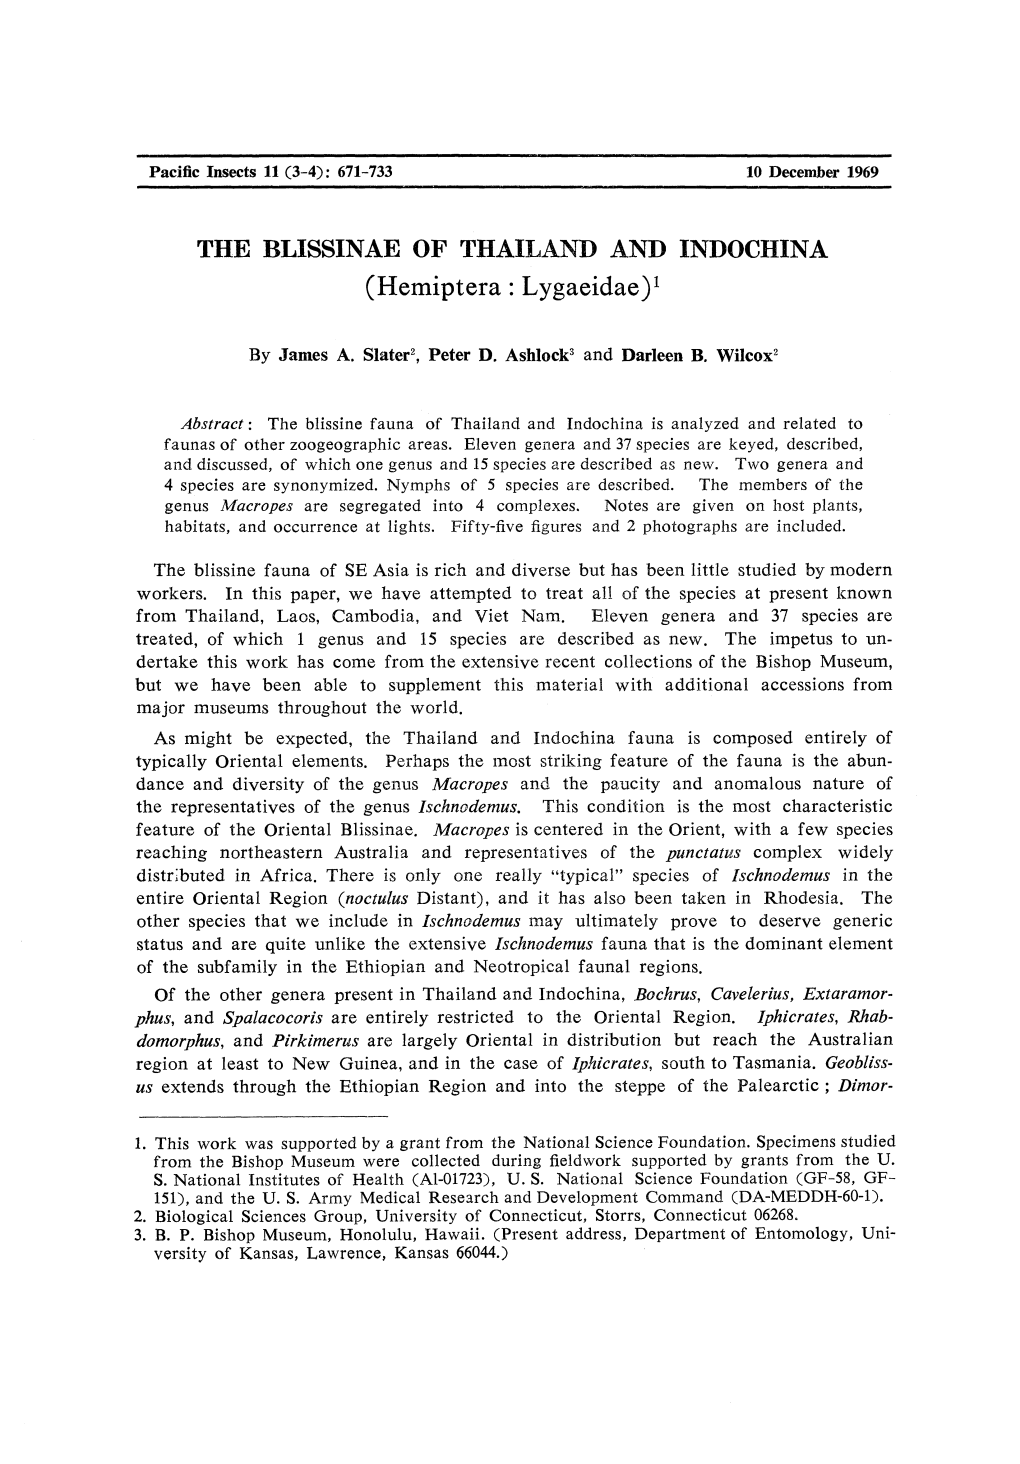 THE BLISSINAE of THAILAND and INDOCHINA (Hemiptera: Lygaeidae)1